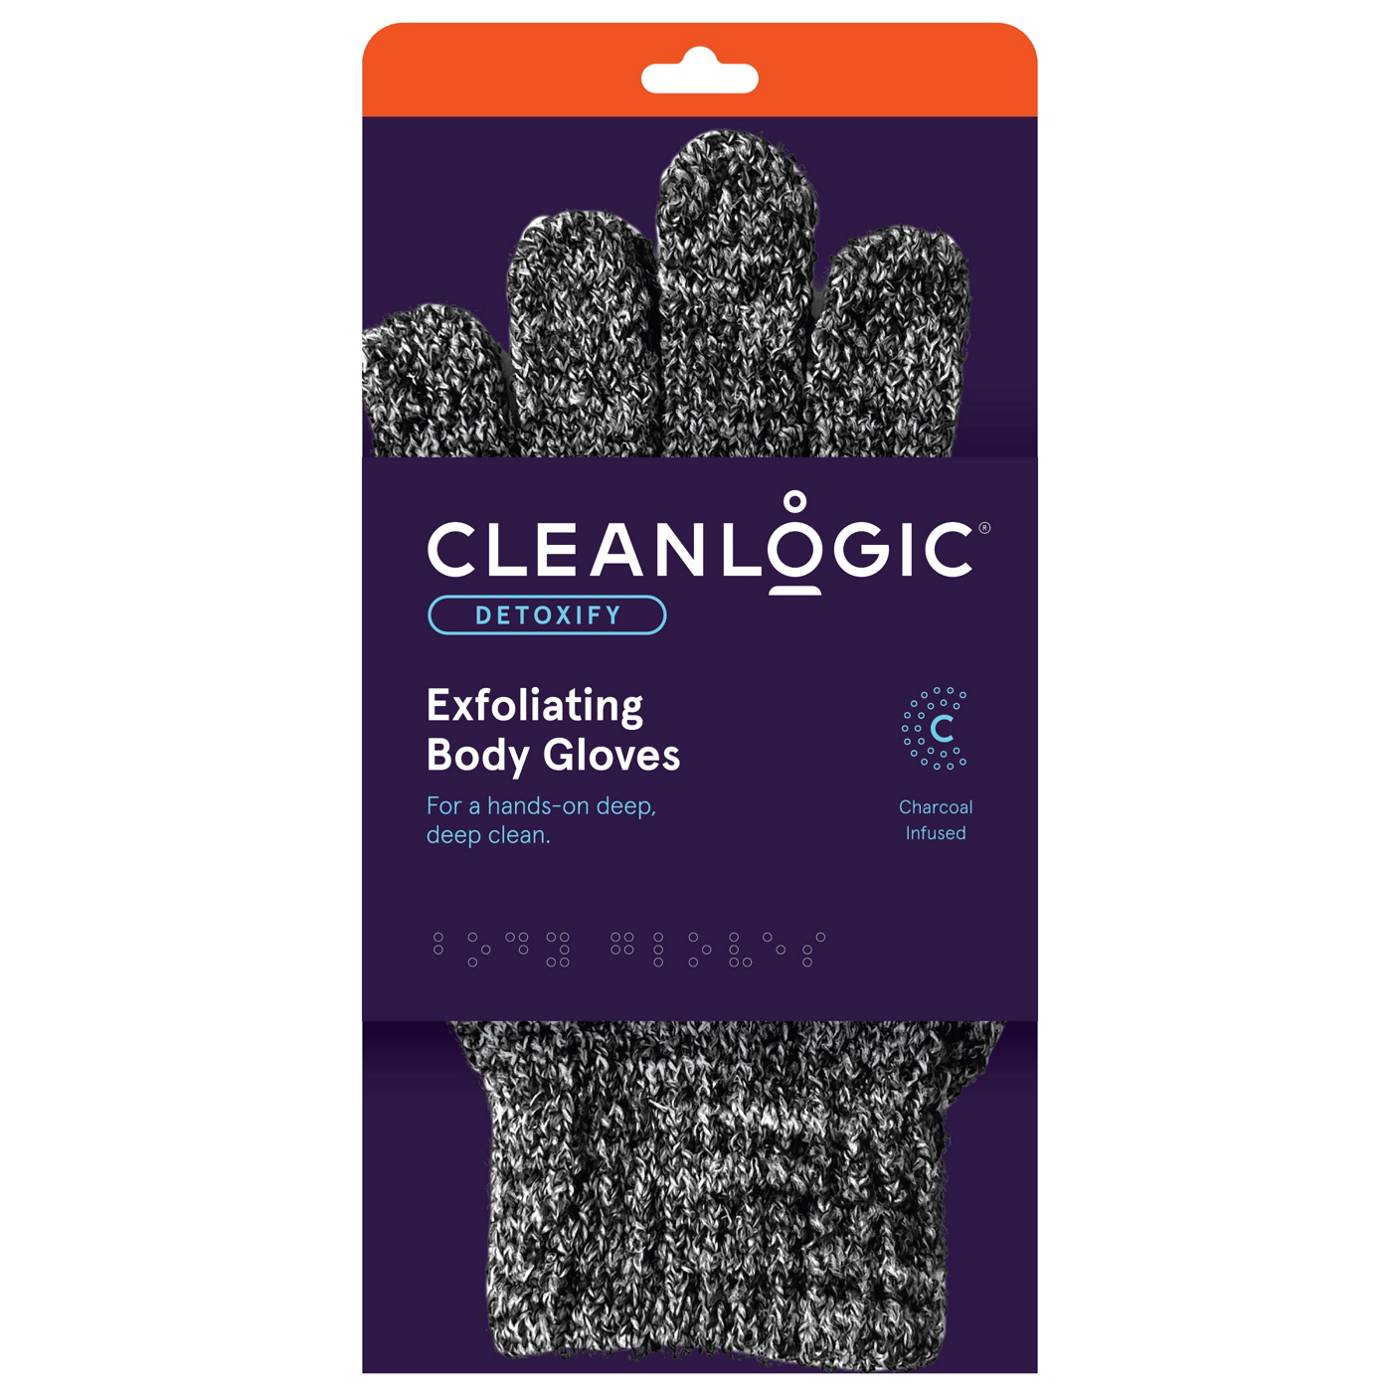 Cleanlogic Detoxify Exfoliating Body Gloves; image 1 of 2